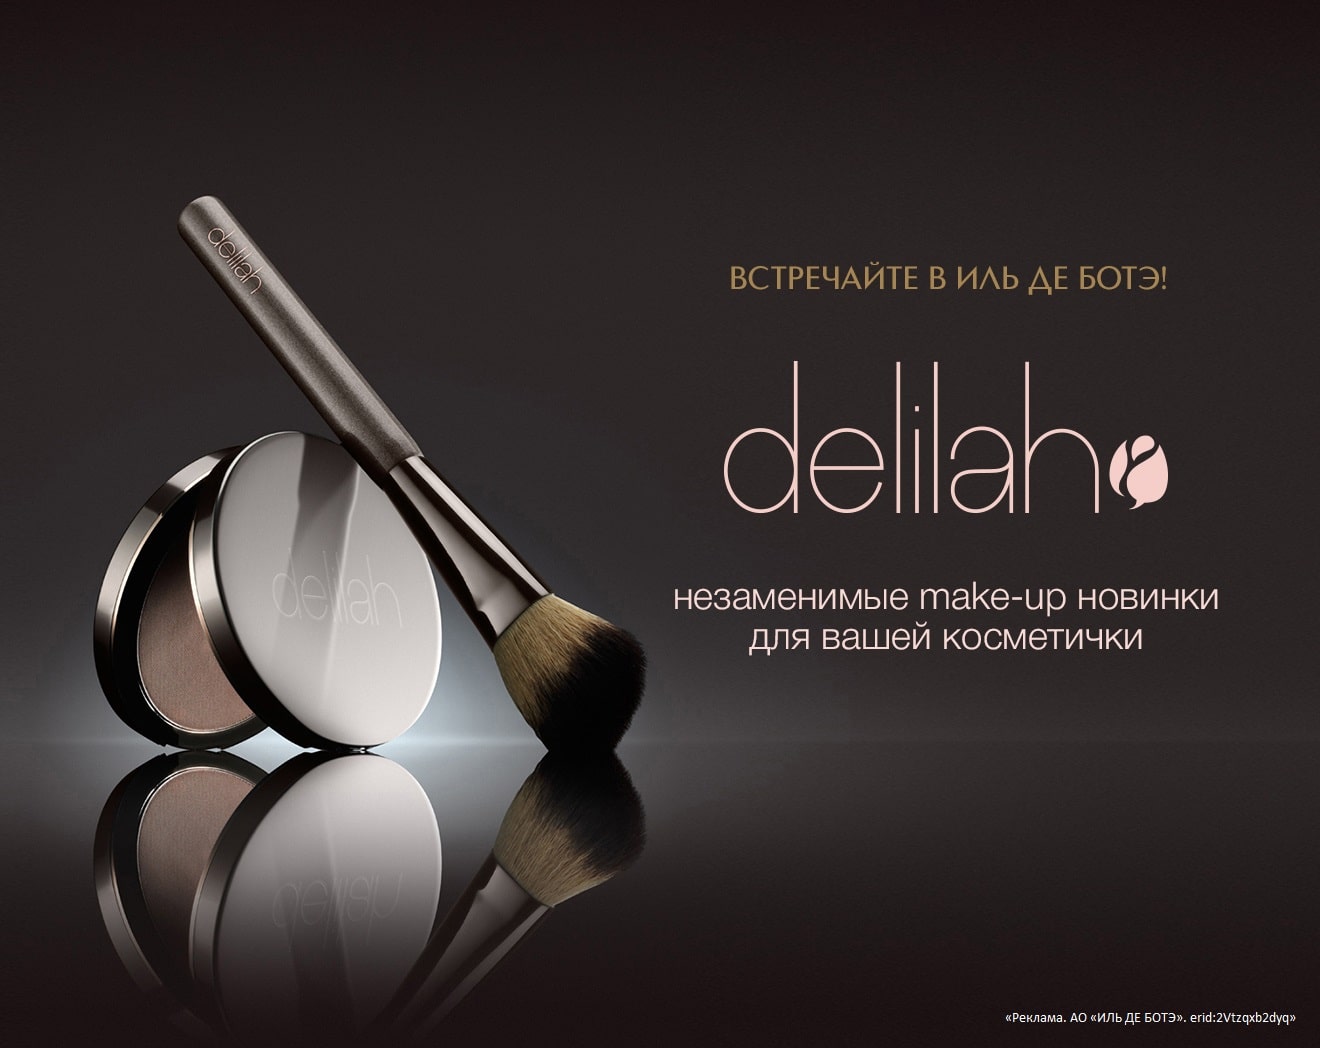 Встречайте новый бренд DELILAH в ИЛЬ ДЕ БОТЭ!